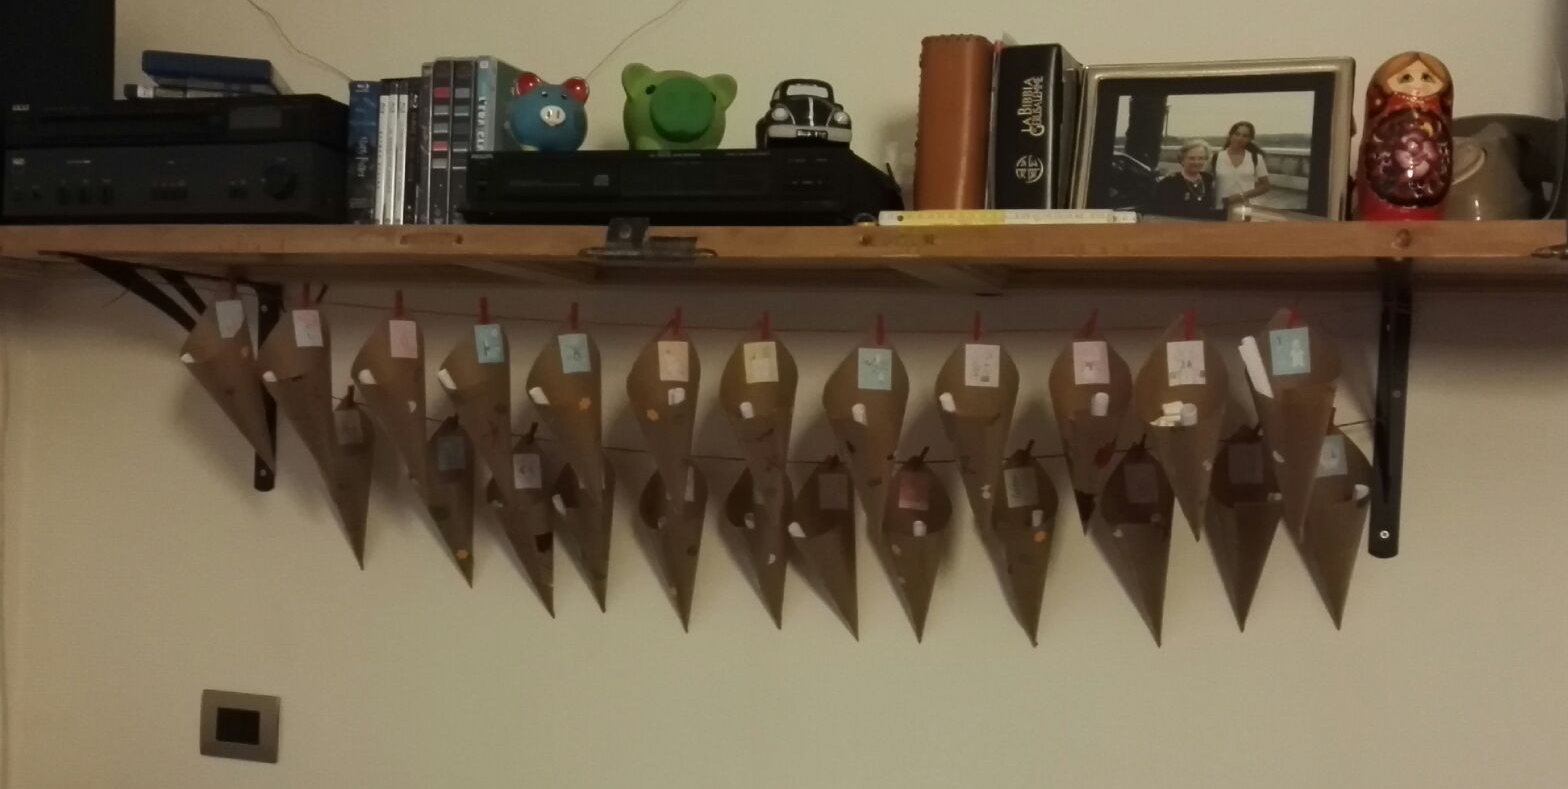 Icalendario avvento realizzato con coni di carta da pacco decorata